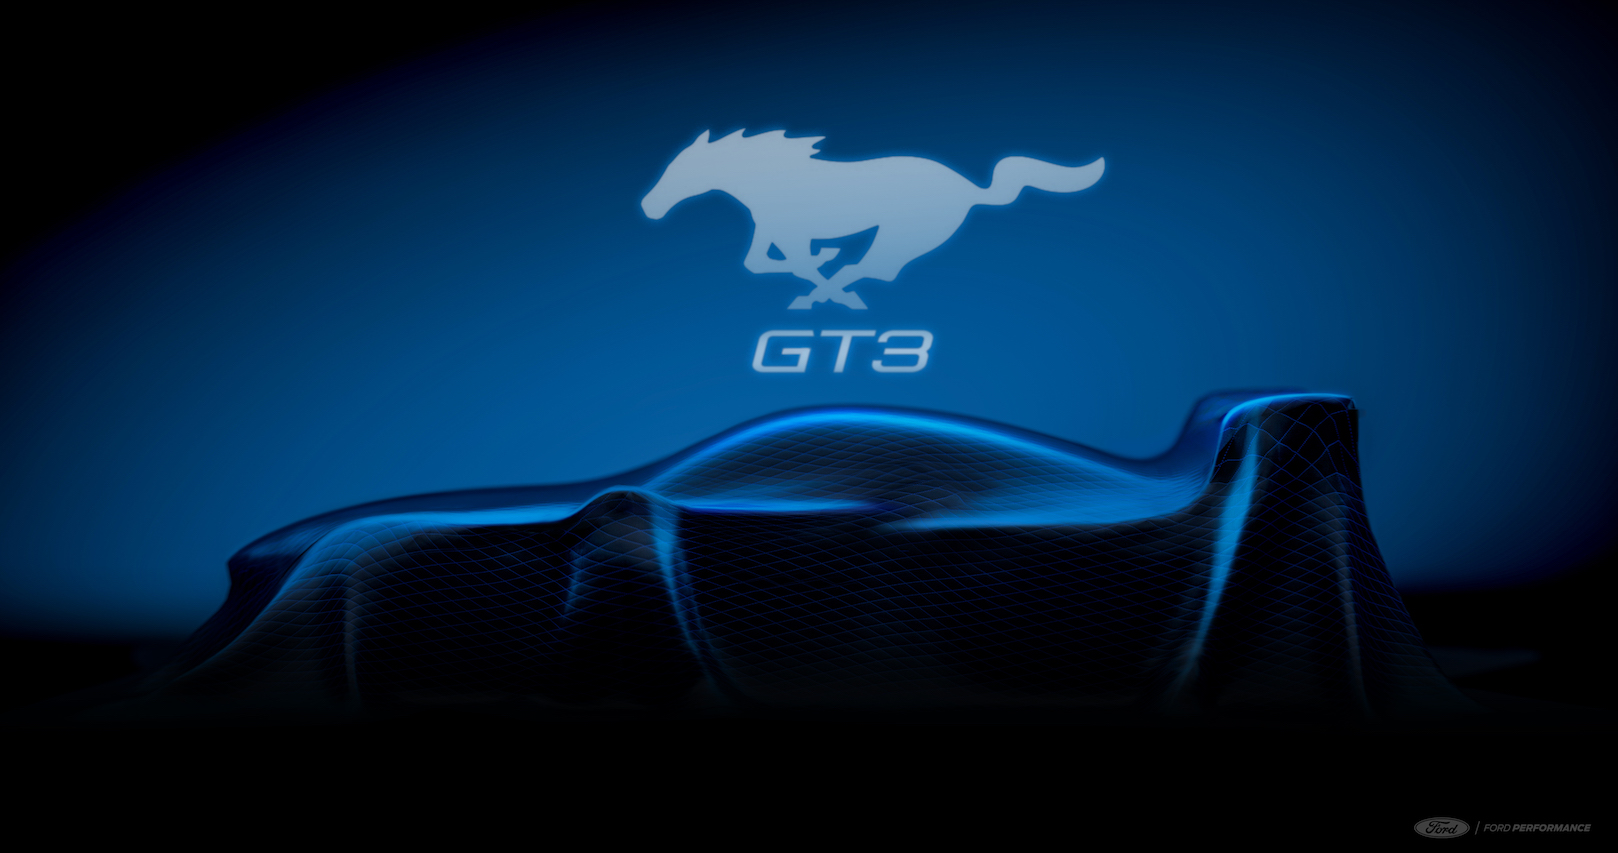 Ford regresa a las carreras GT3 con el nuevo Mustang GT3